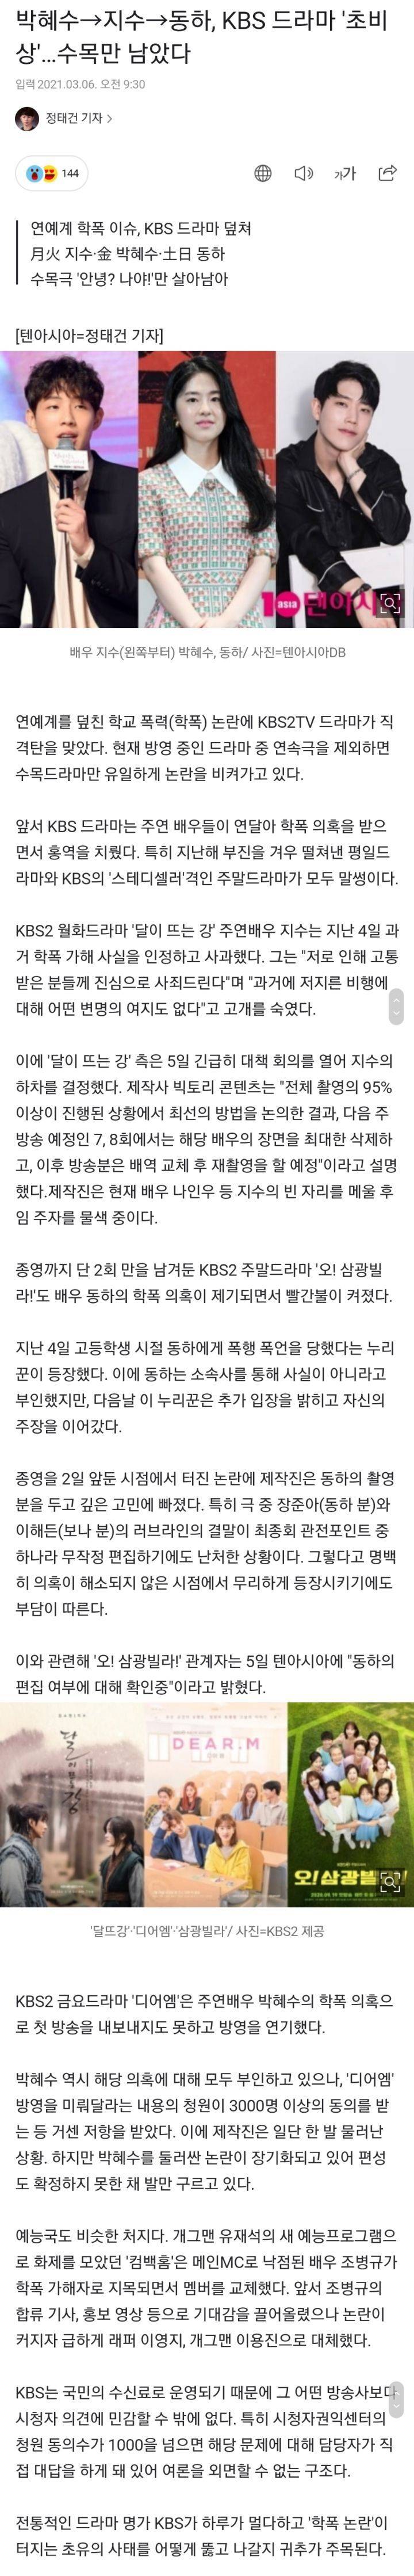 학폭이슈로 드라마 다 날라간 KBS | 인스티즈